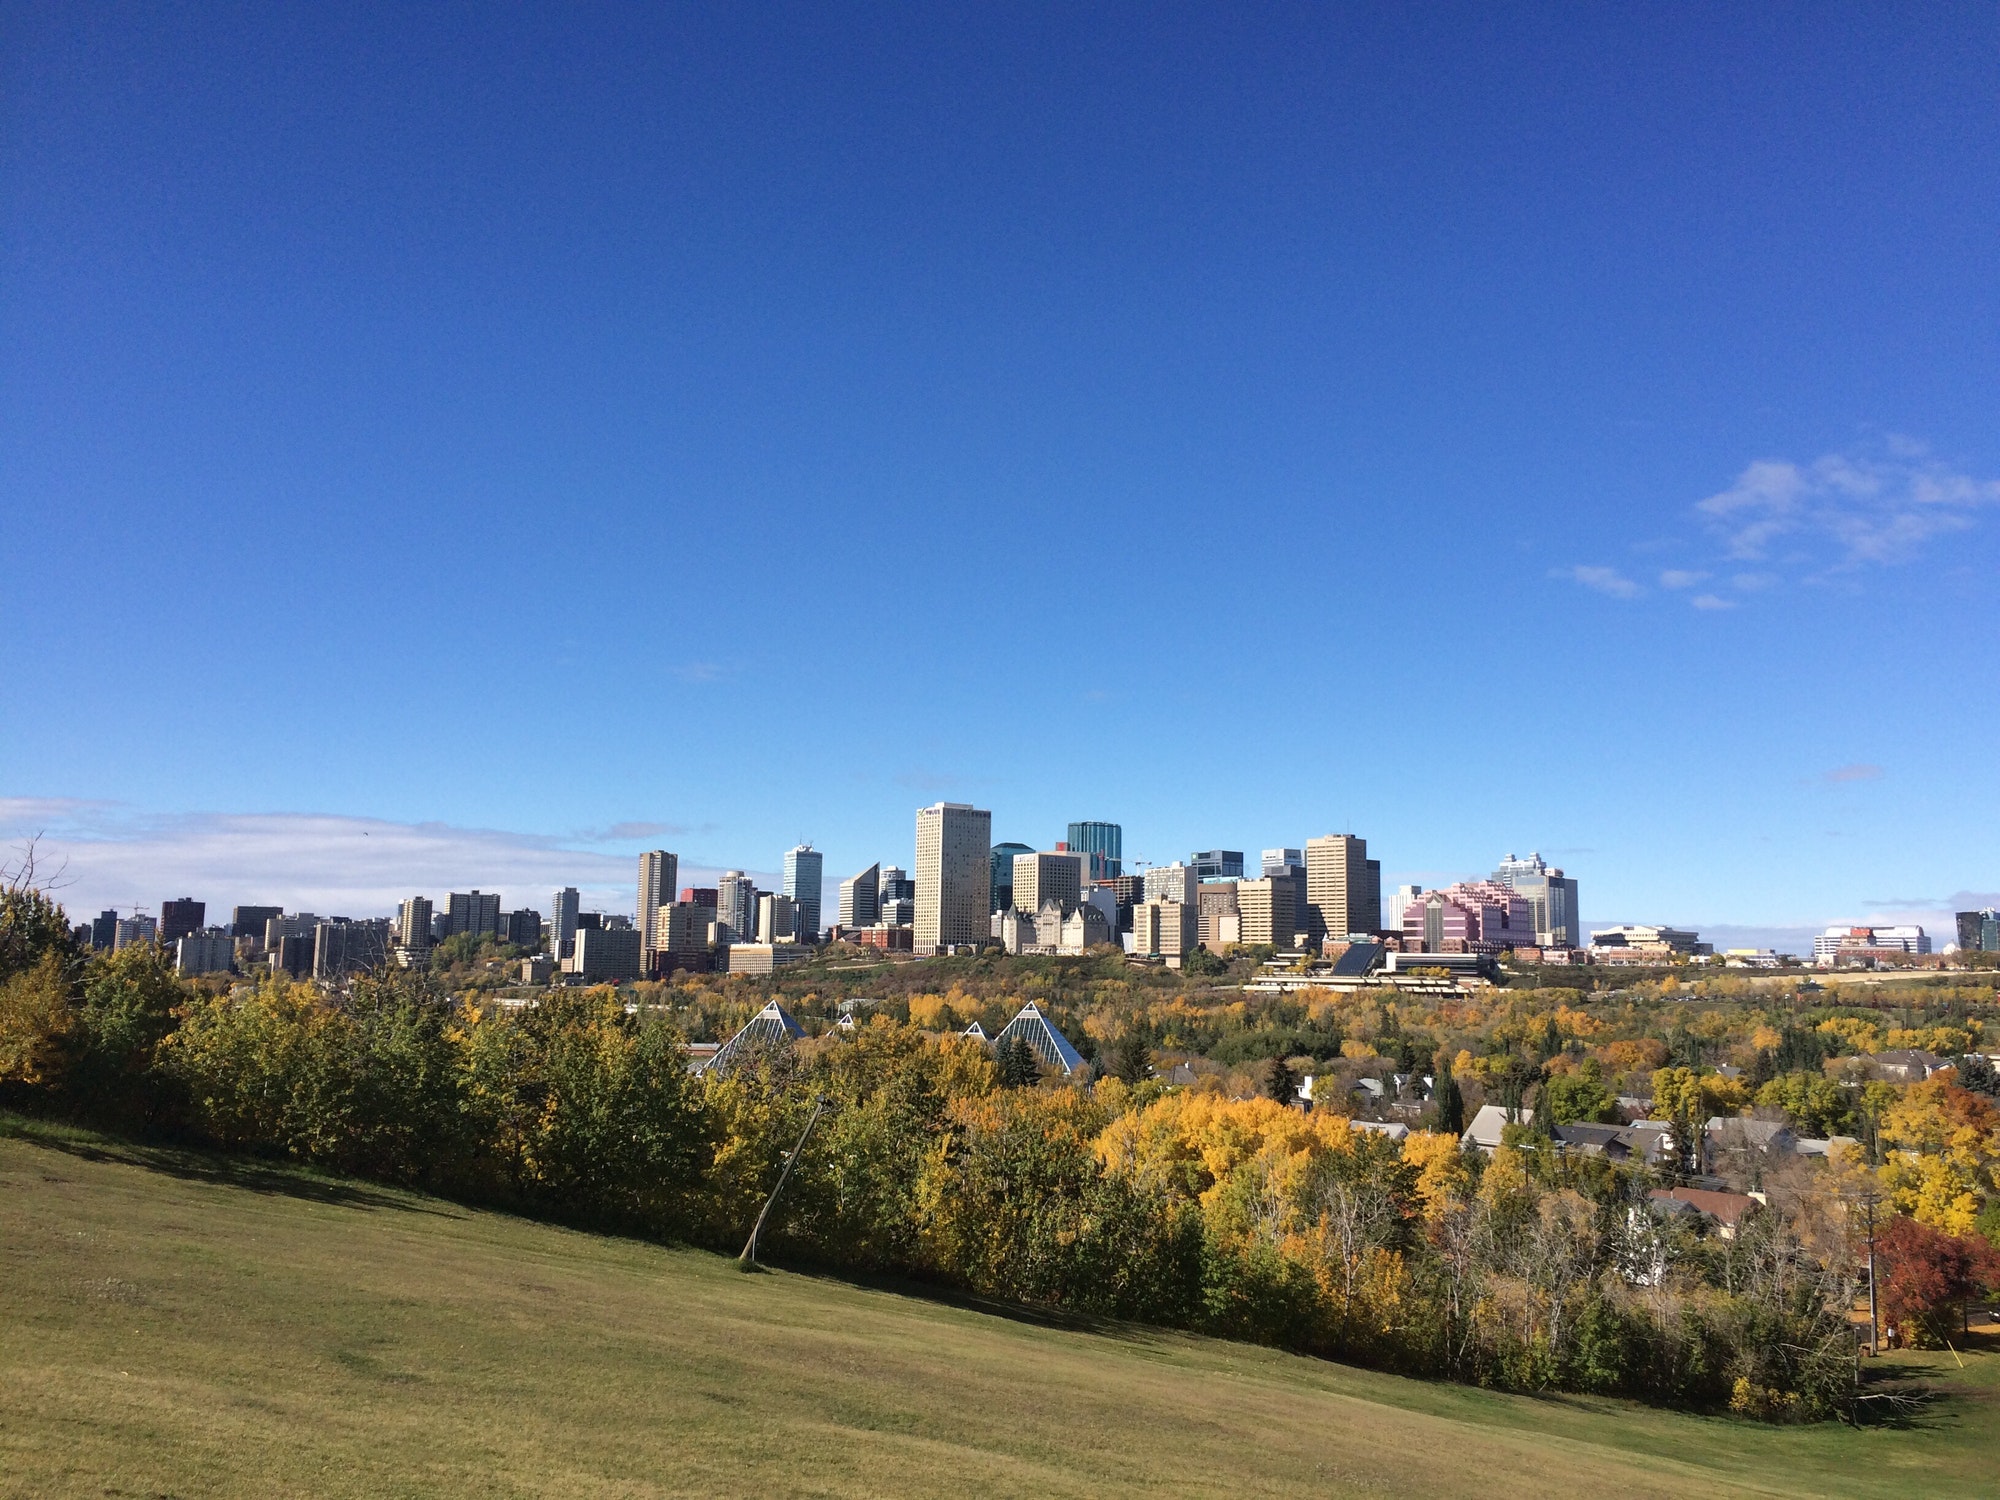 Edmonton, AB Canada in Autumn